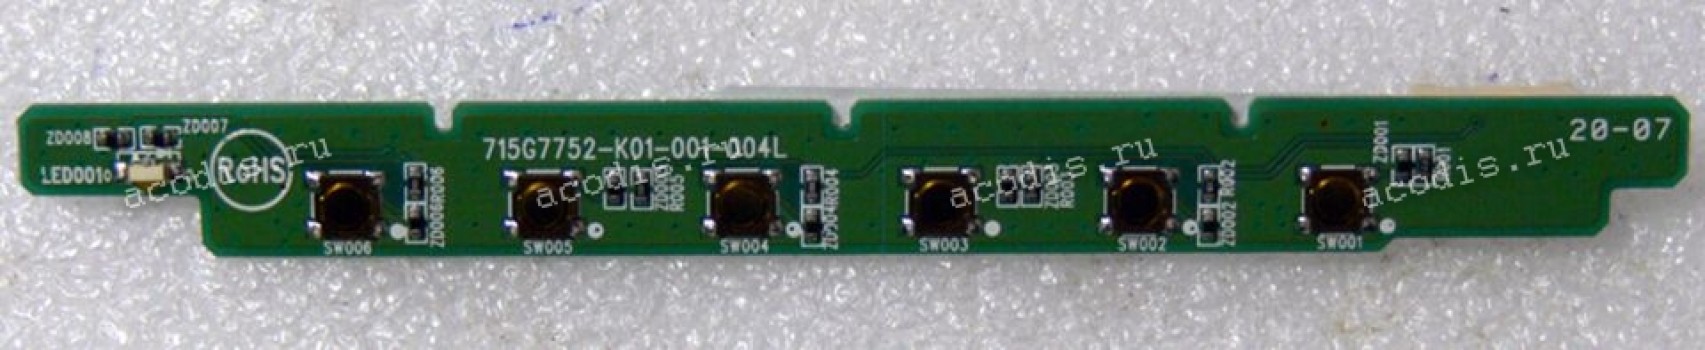 Switchboard Asus LCD Monitor VP228DE, VP229DA, VP229HA (p/n 715G7752-K01-001-004L, 04020-02161800)